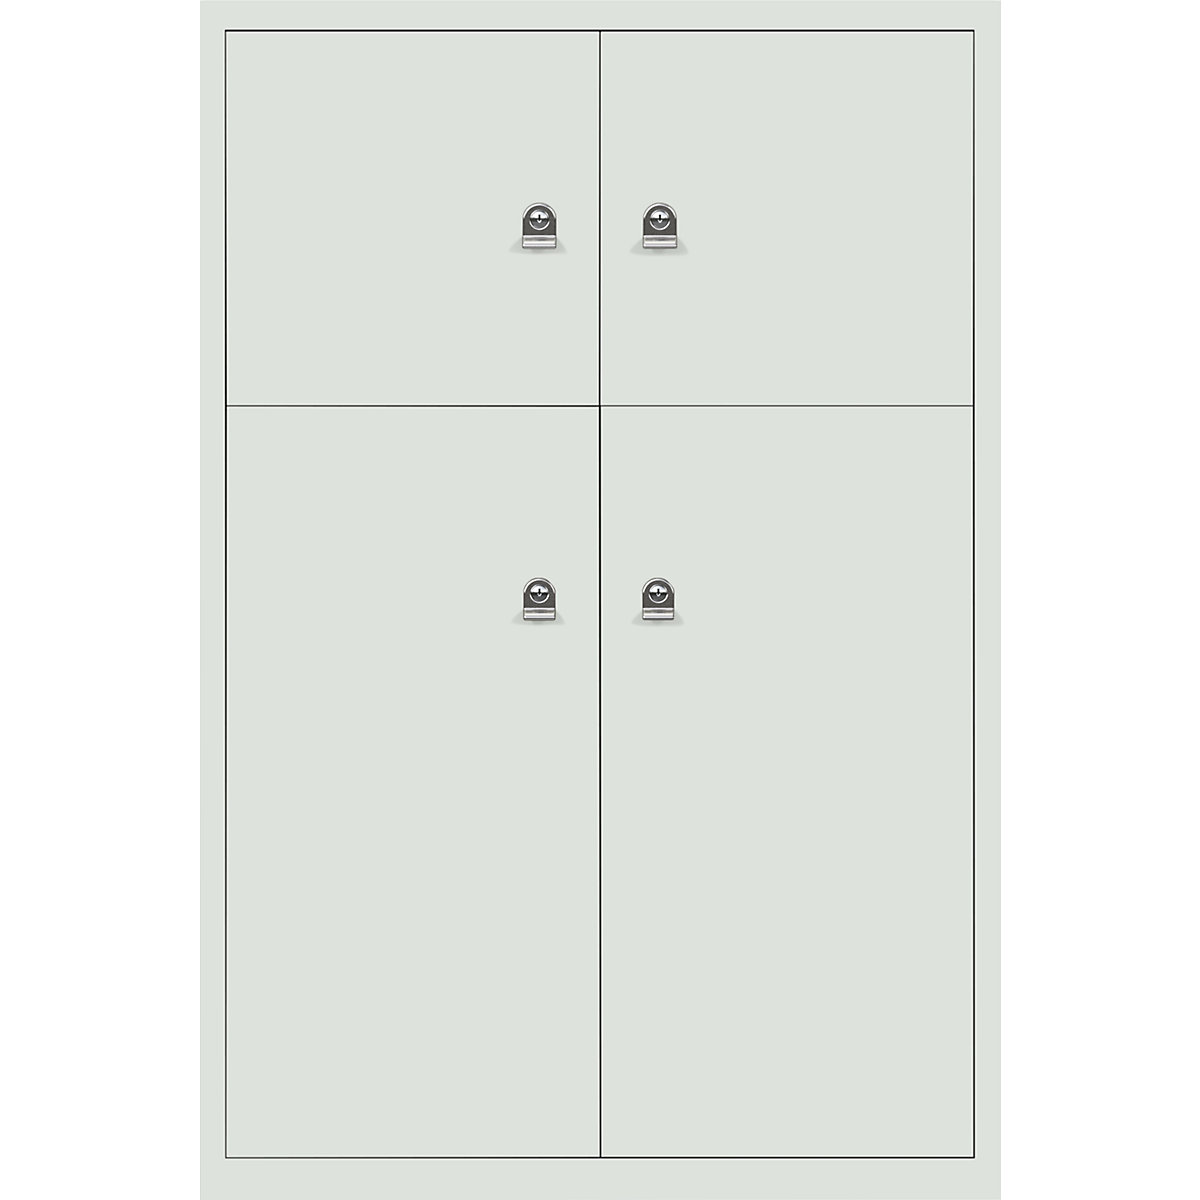 Omara s predelki z zaklepanjem LateralFile™ – BISLEY, 4 predelki z zaklepanjem, višina 2 x 375 mm, 2 x 755 mm, sivo bele barve-31